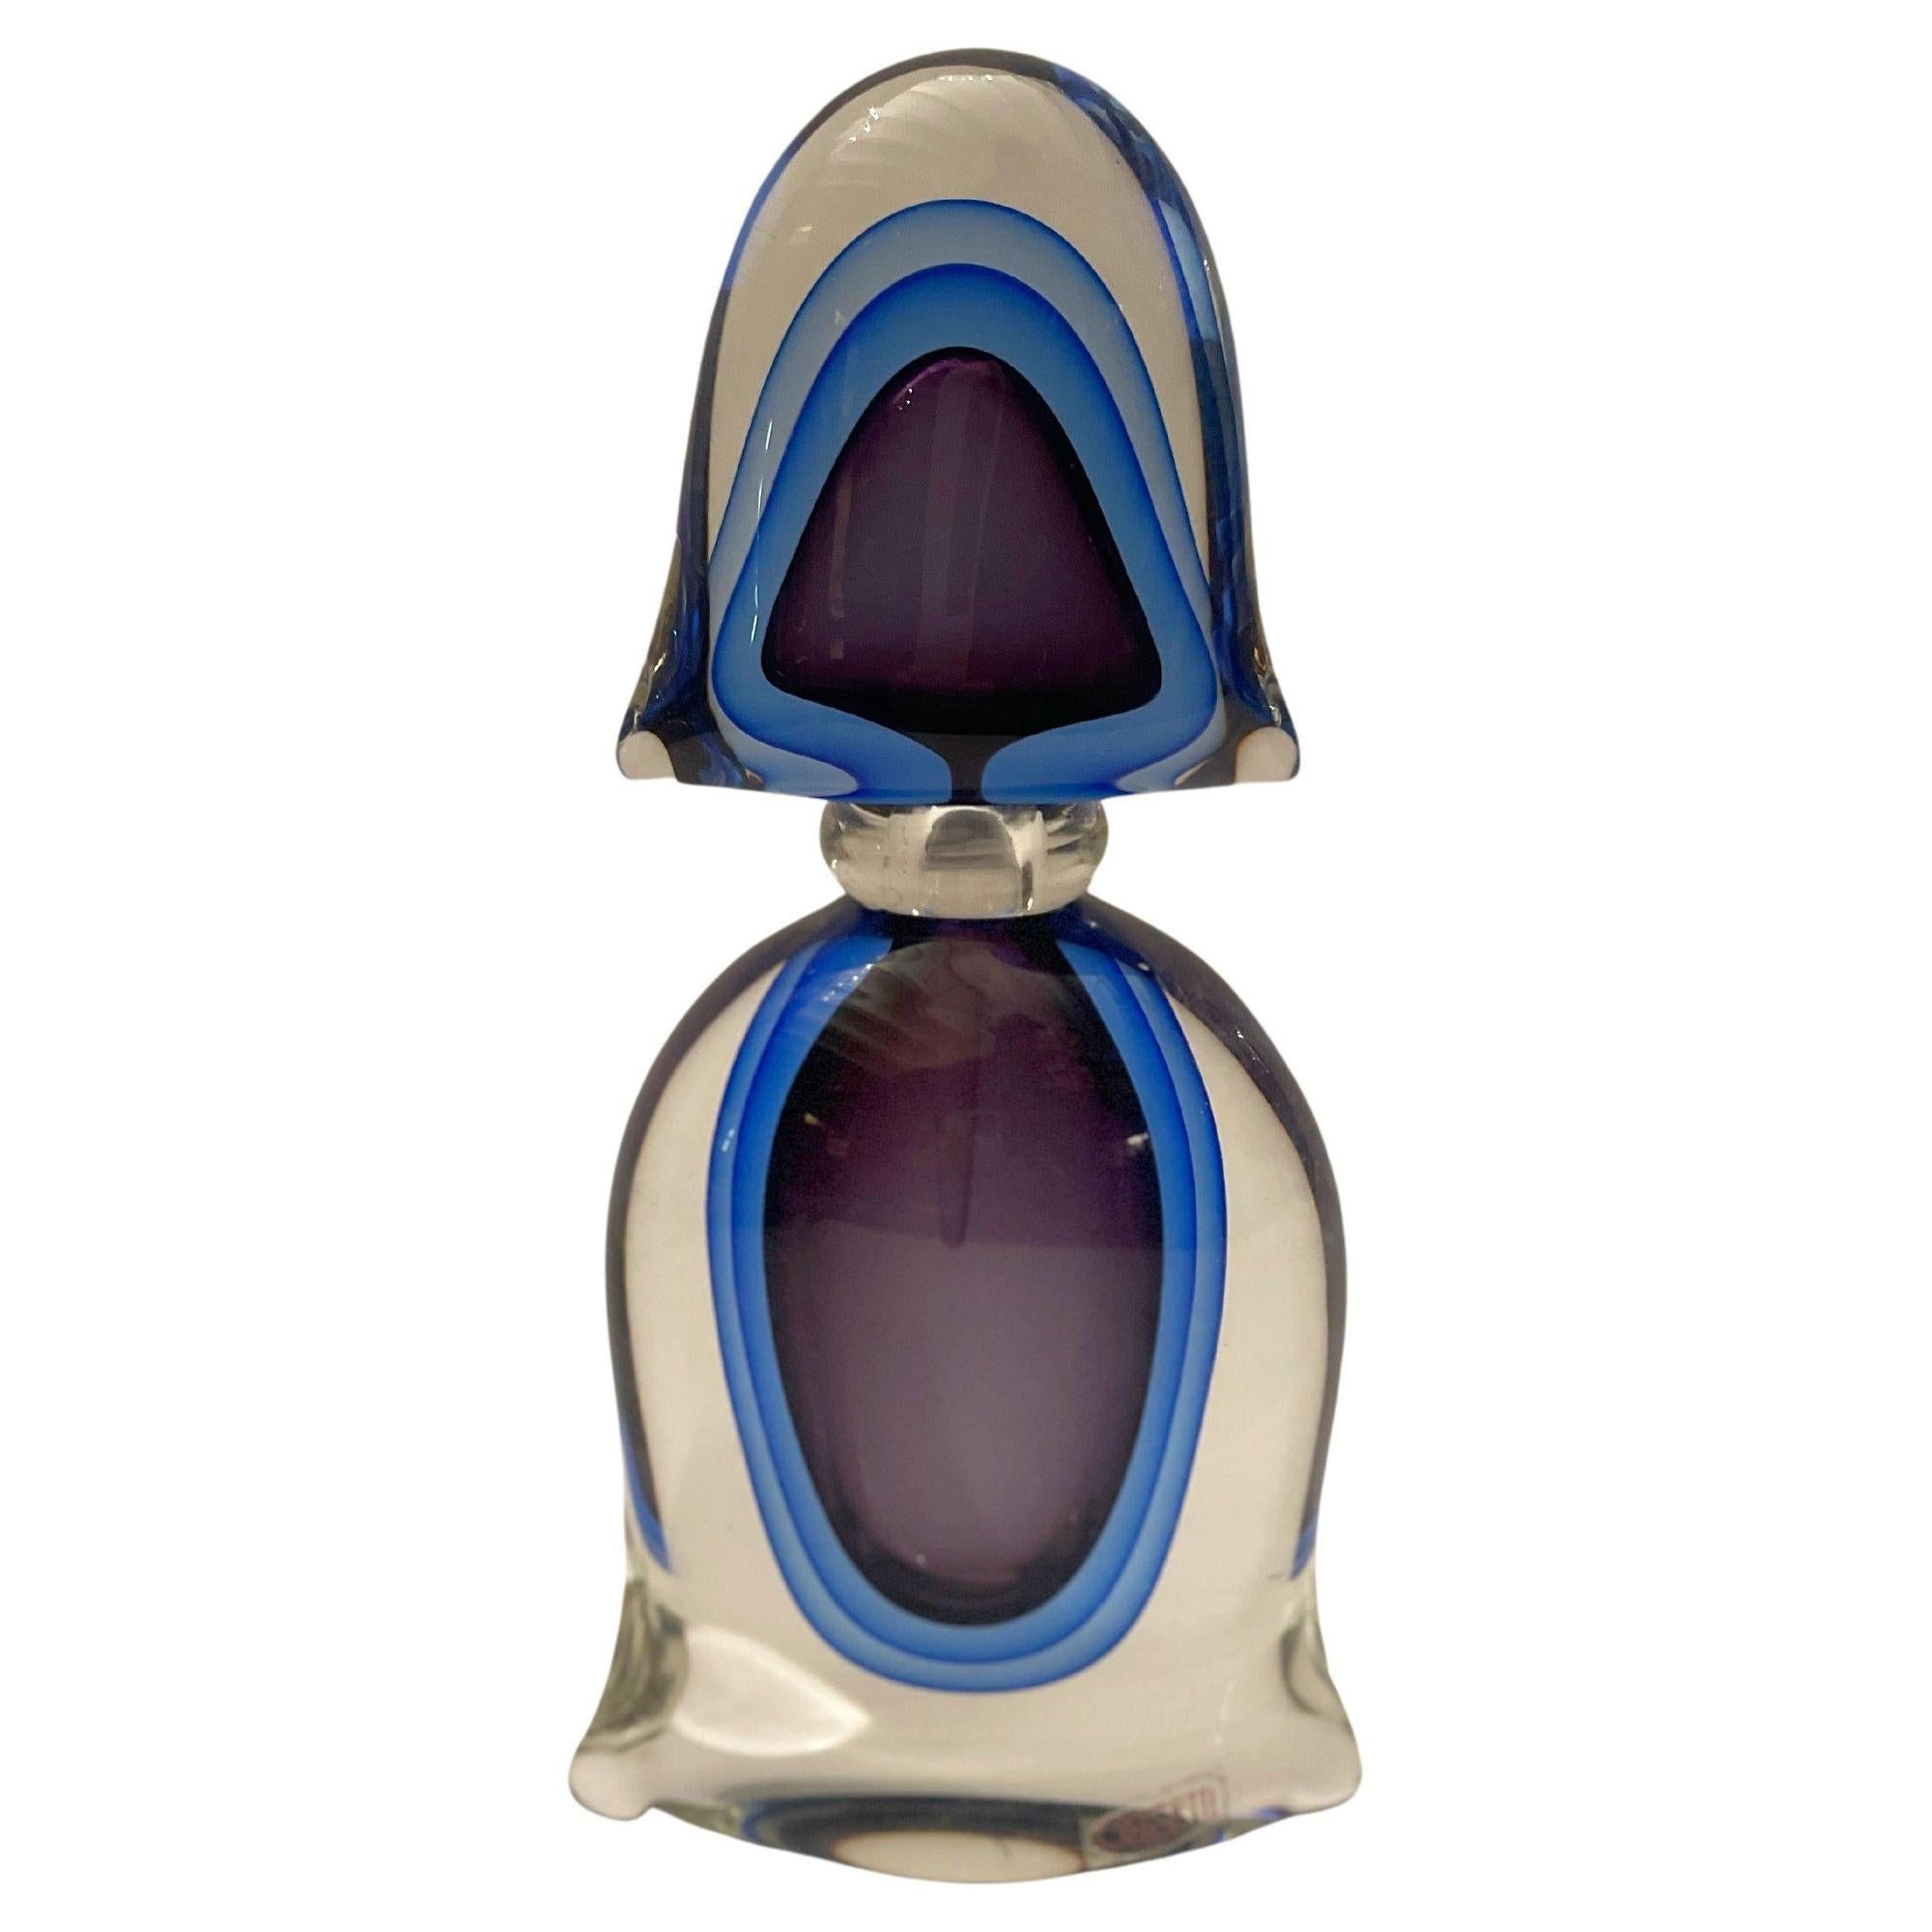 Ensemble de flacons de parfum en verre de Murano, fabriqués en Italie, années 1960. 
Certains ont encore l'autocollant d'origine.
Dimensions : 
Grande bouteille : 11 